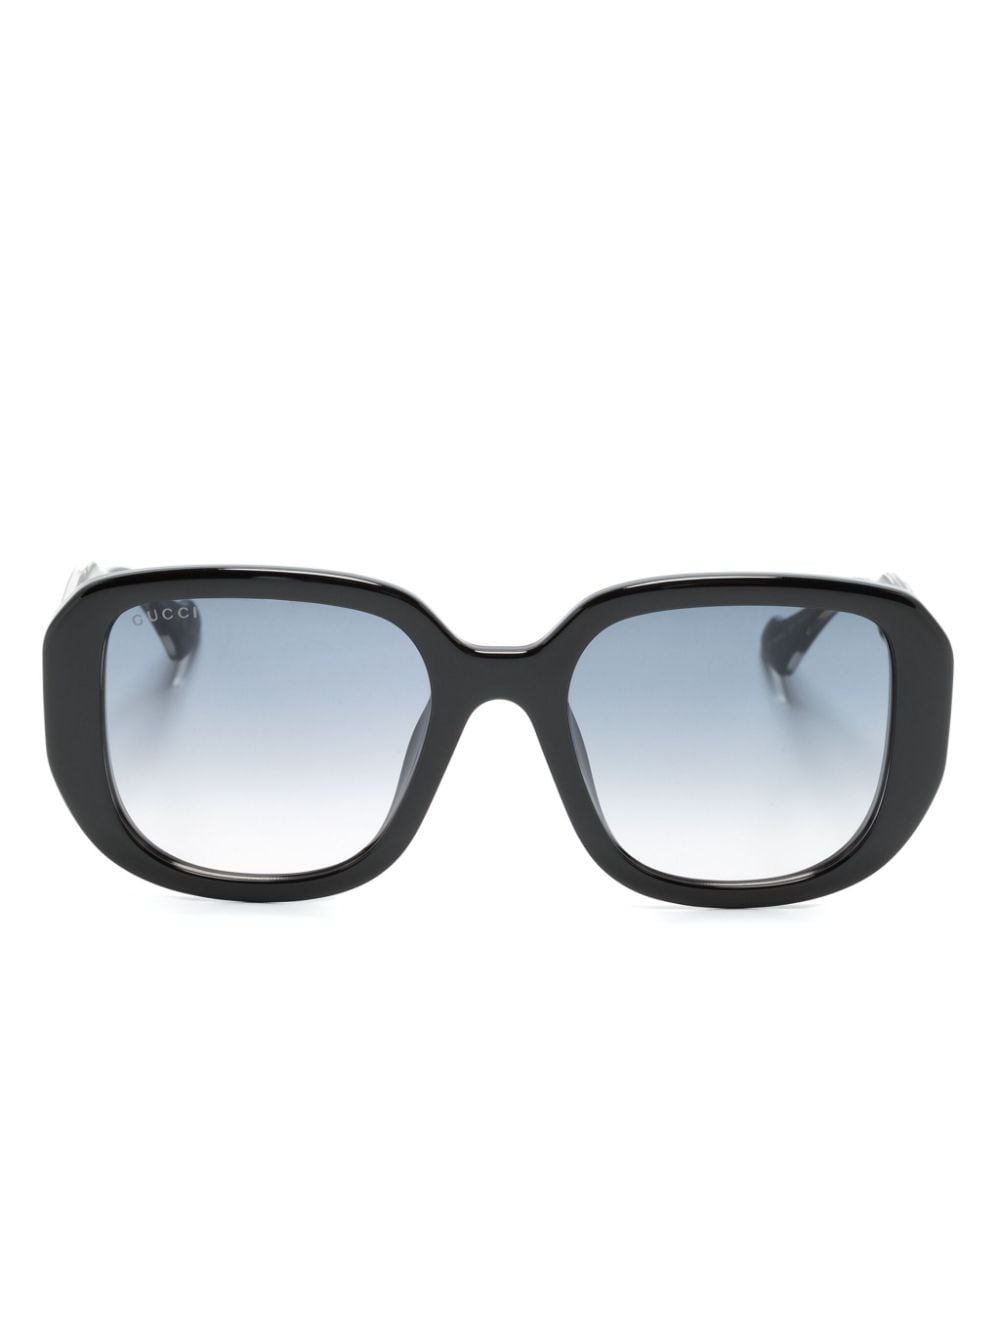 Gucci Eyewear Sonnenbrille mit eckigem Gestell - Schwarz von Gucci Eyewear